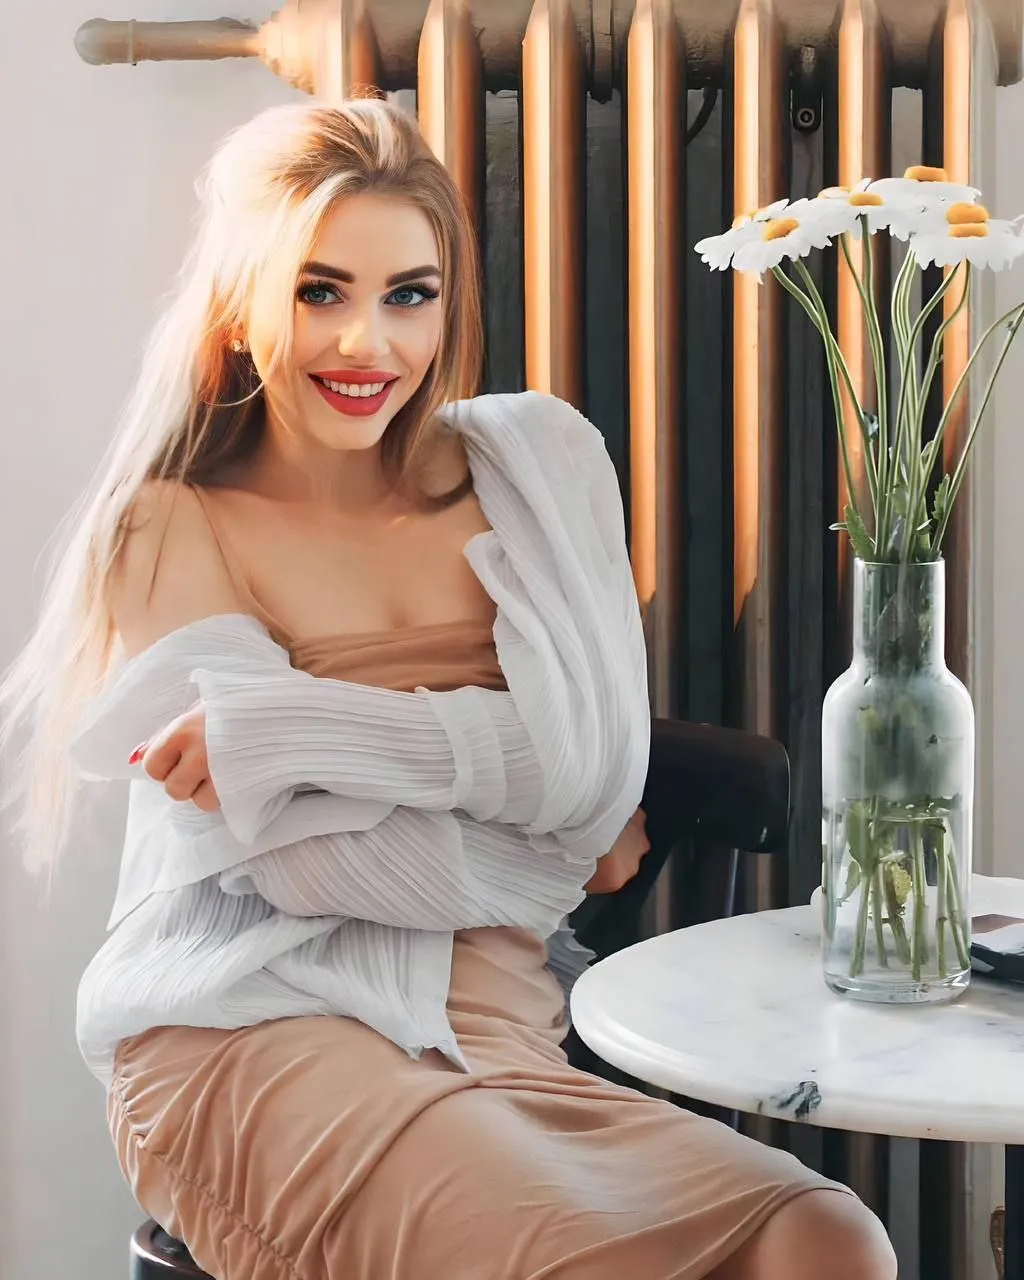 Anna russian dating website